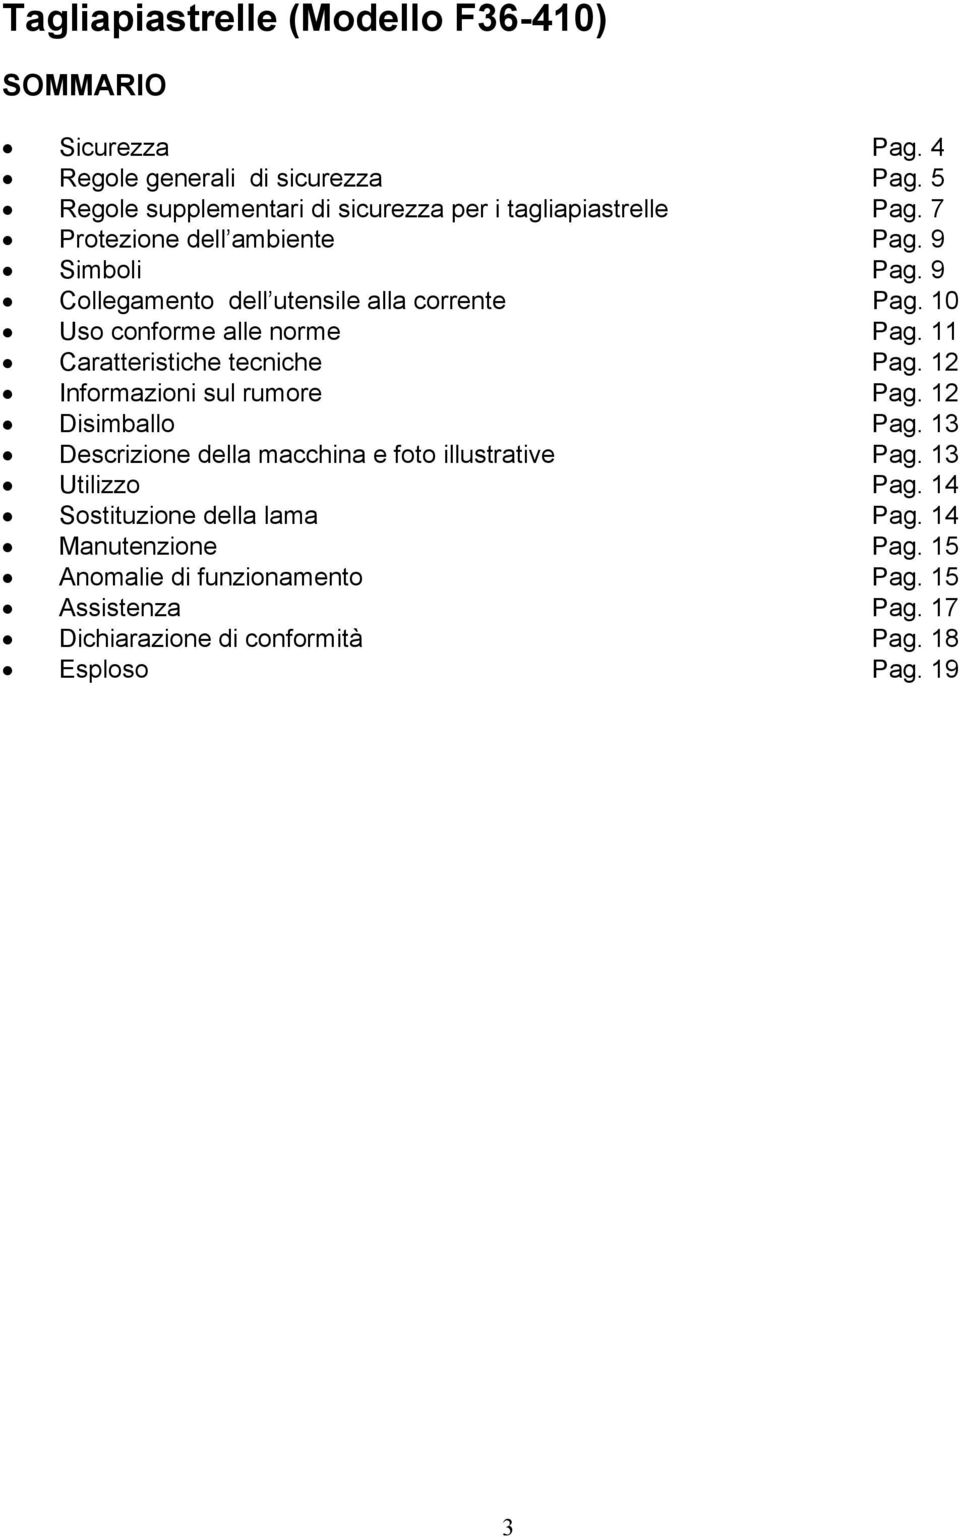 9 Collegamento dell utensile alla corrente Pag. 10 Uso conforme alle norme Pag. 11 Caratteristiche tecniche Pag. 12 Informazioni sul rumore Pag.